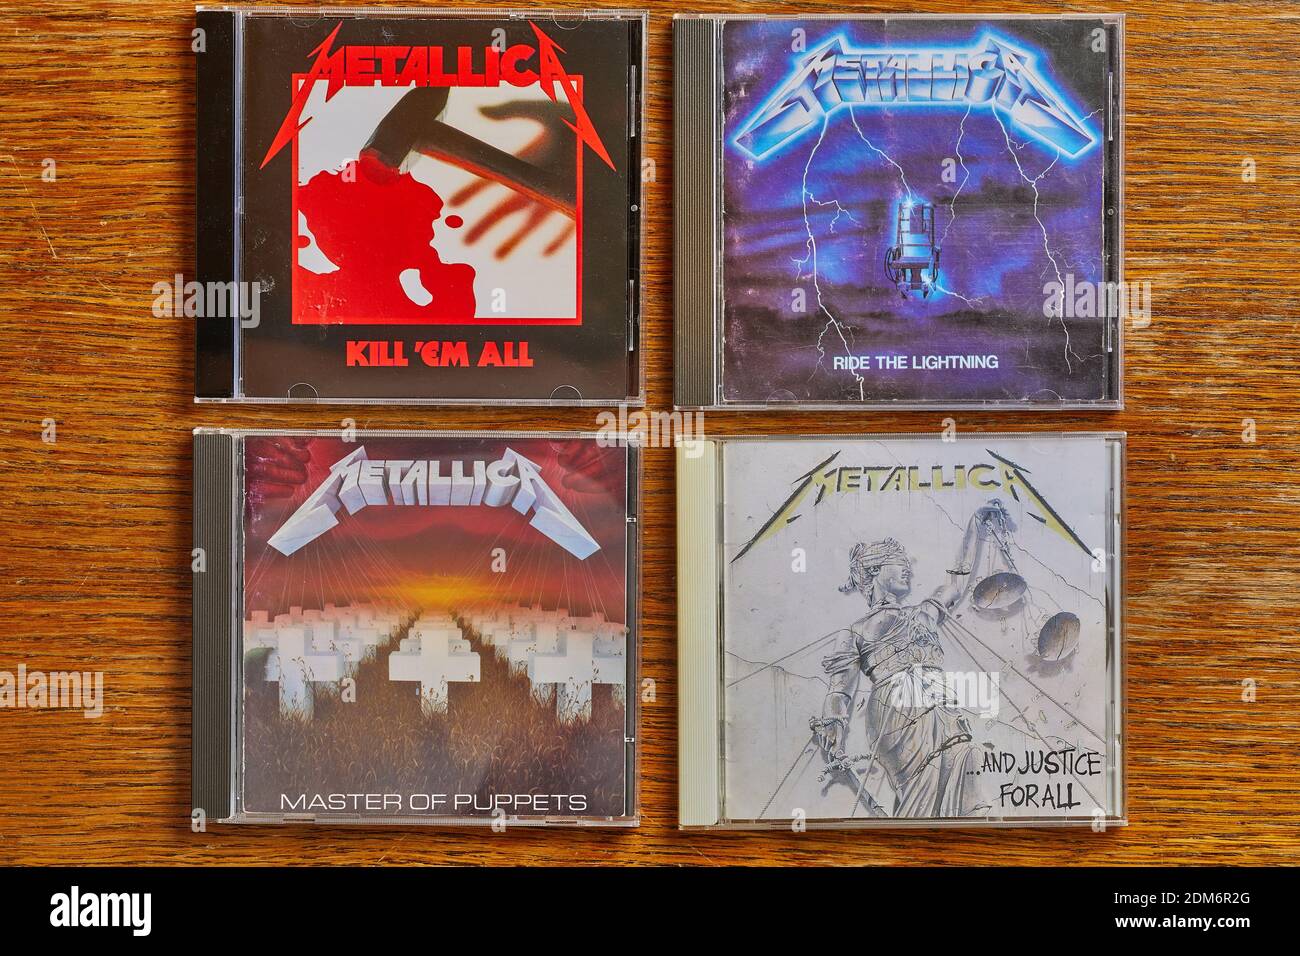 METALLICA: Metallica (Black album, s.t) CD Japanese 1991 import (w. Obi,  booklet, extras etc.) + Bonus track (cover) So What - Yperano Records